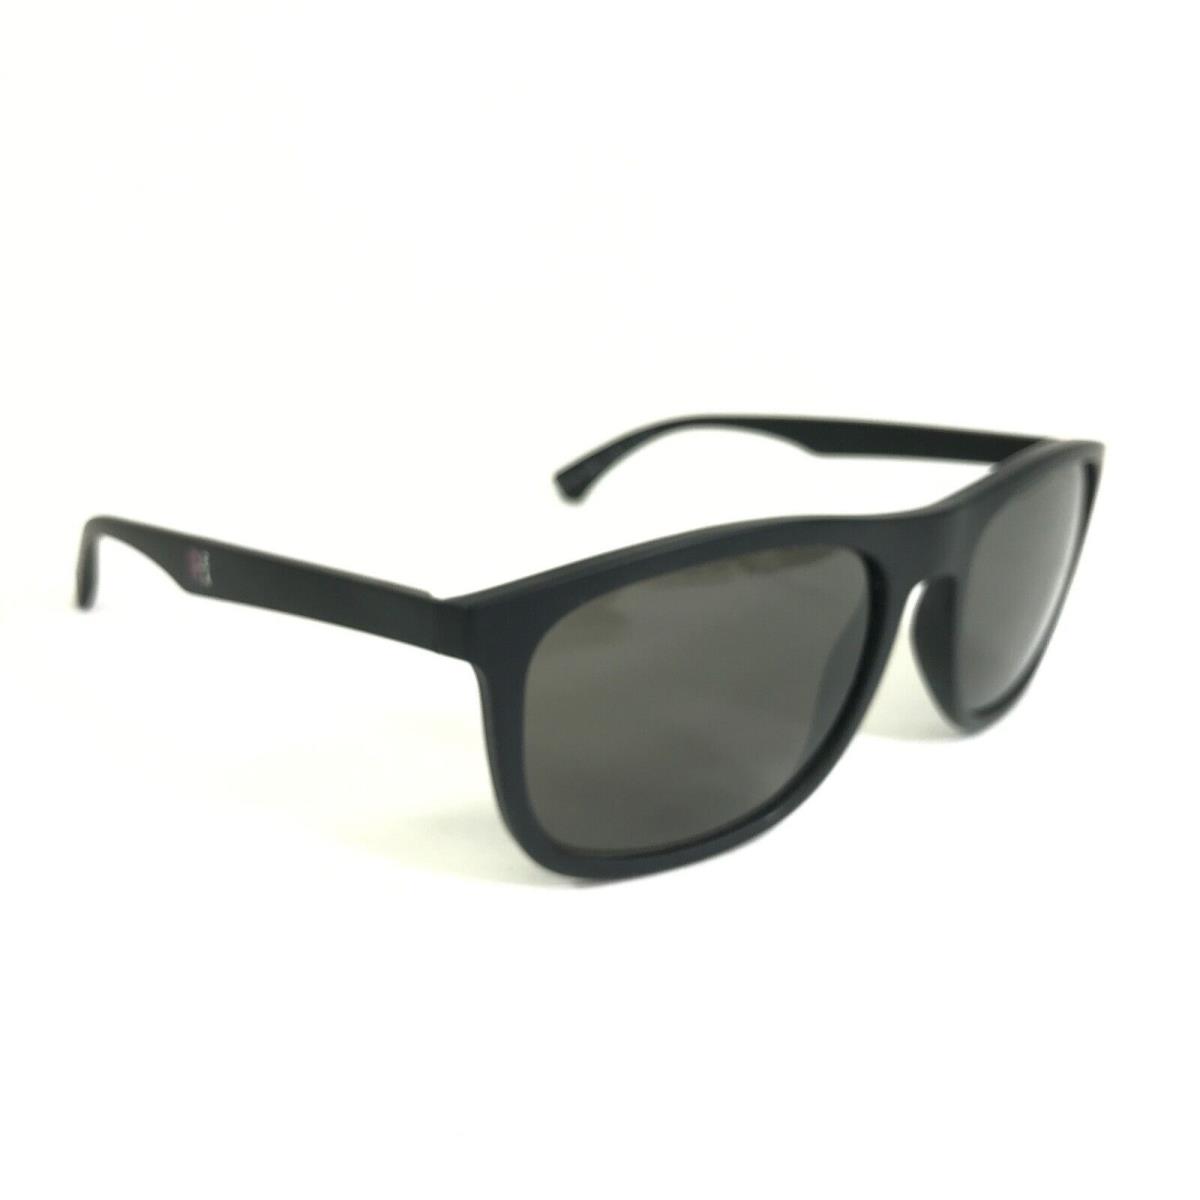 Emporio Armani sunglasses  - Black Frame, Gray Lens 2